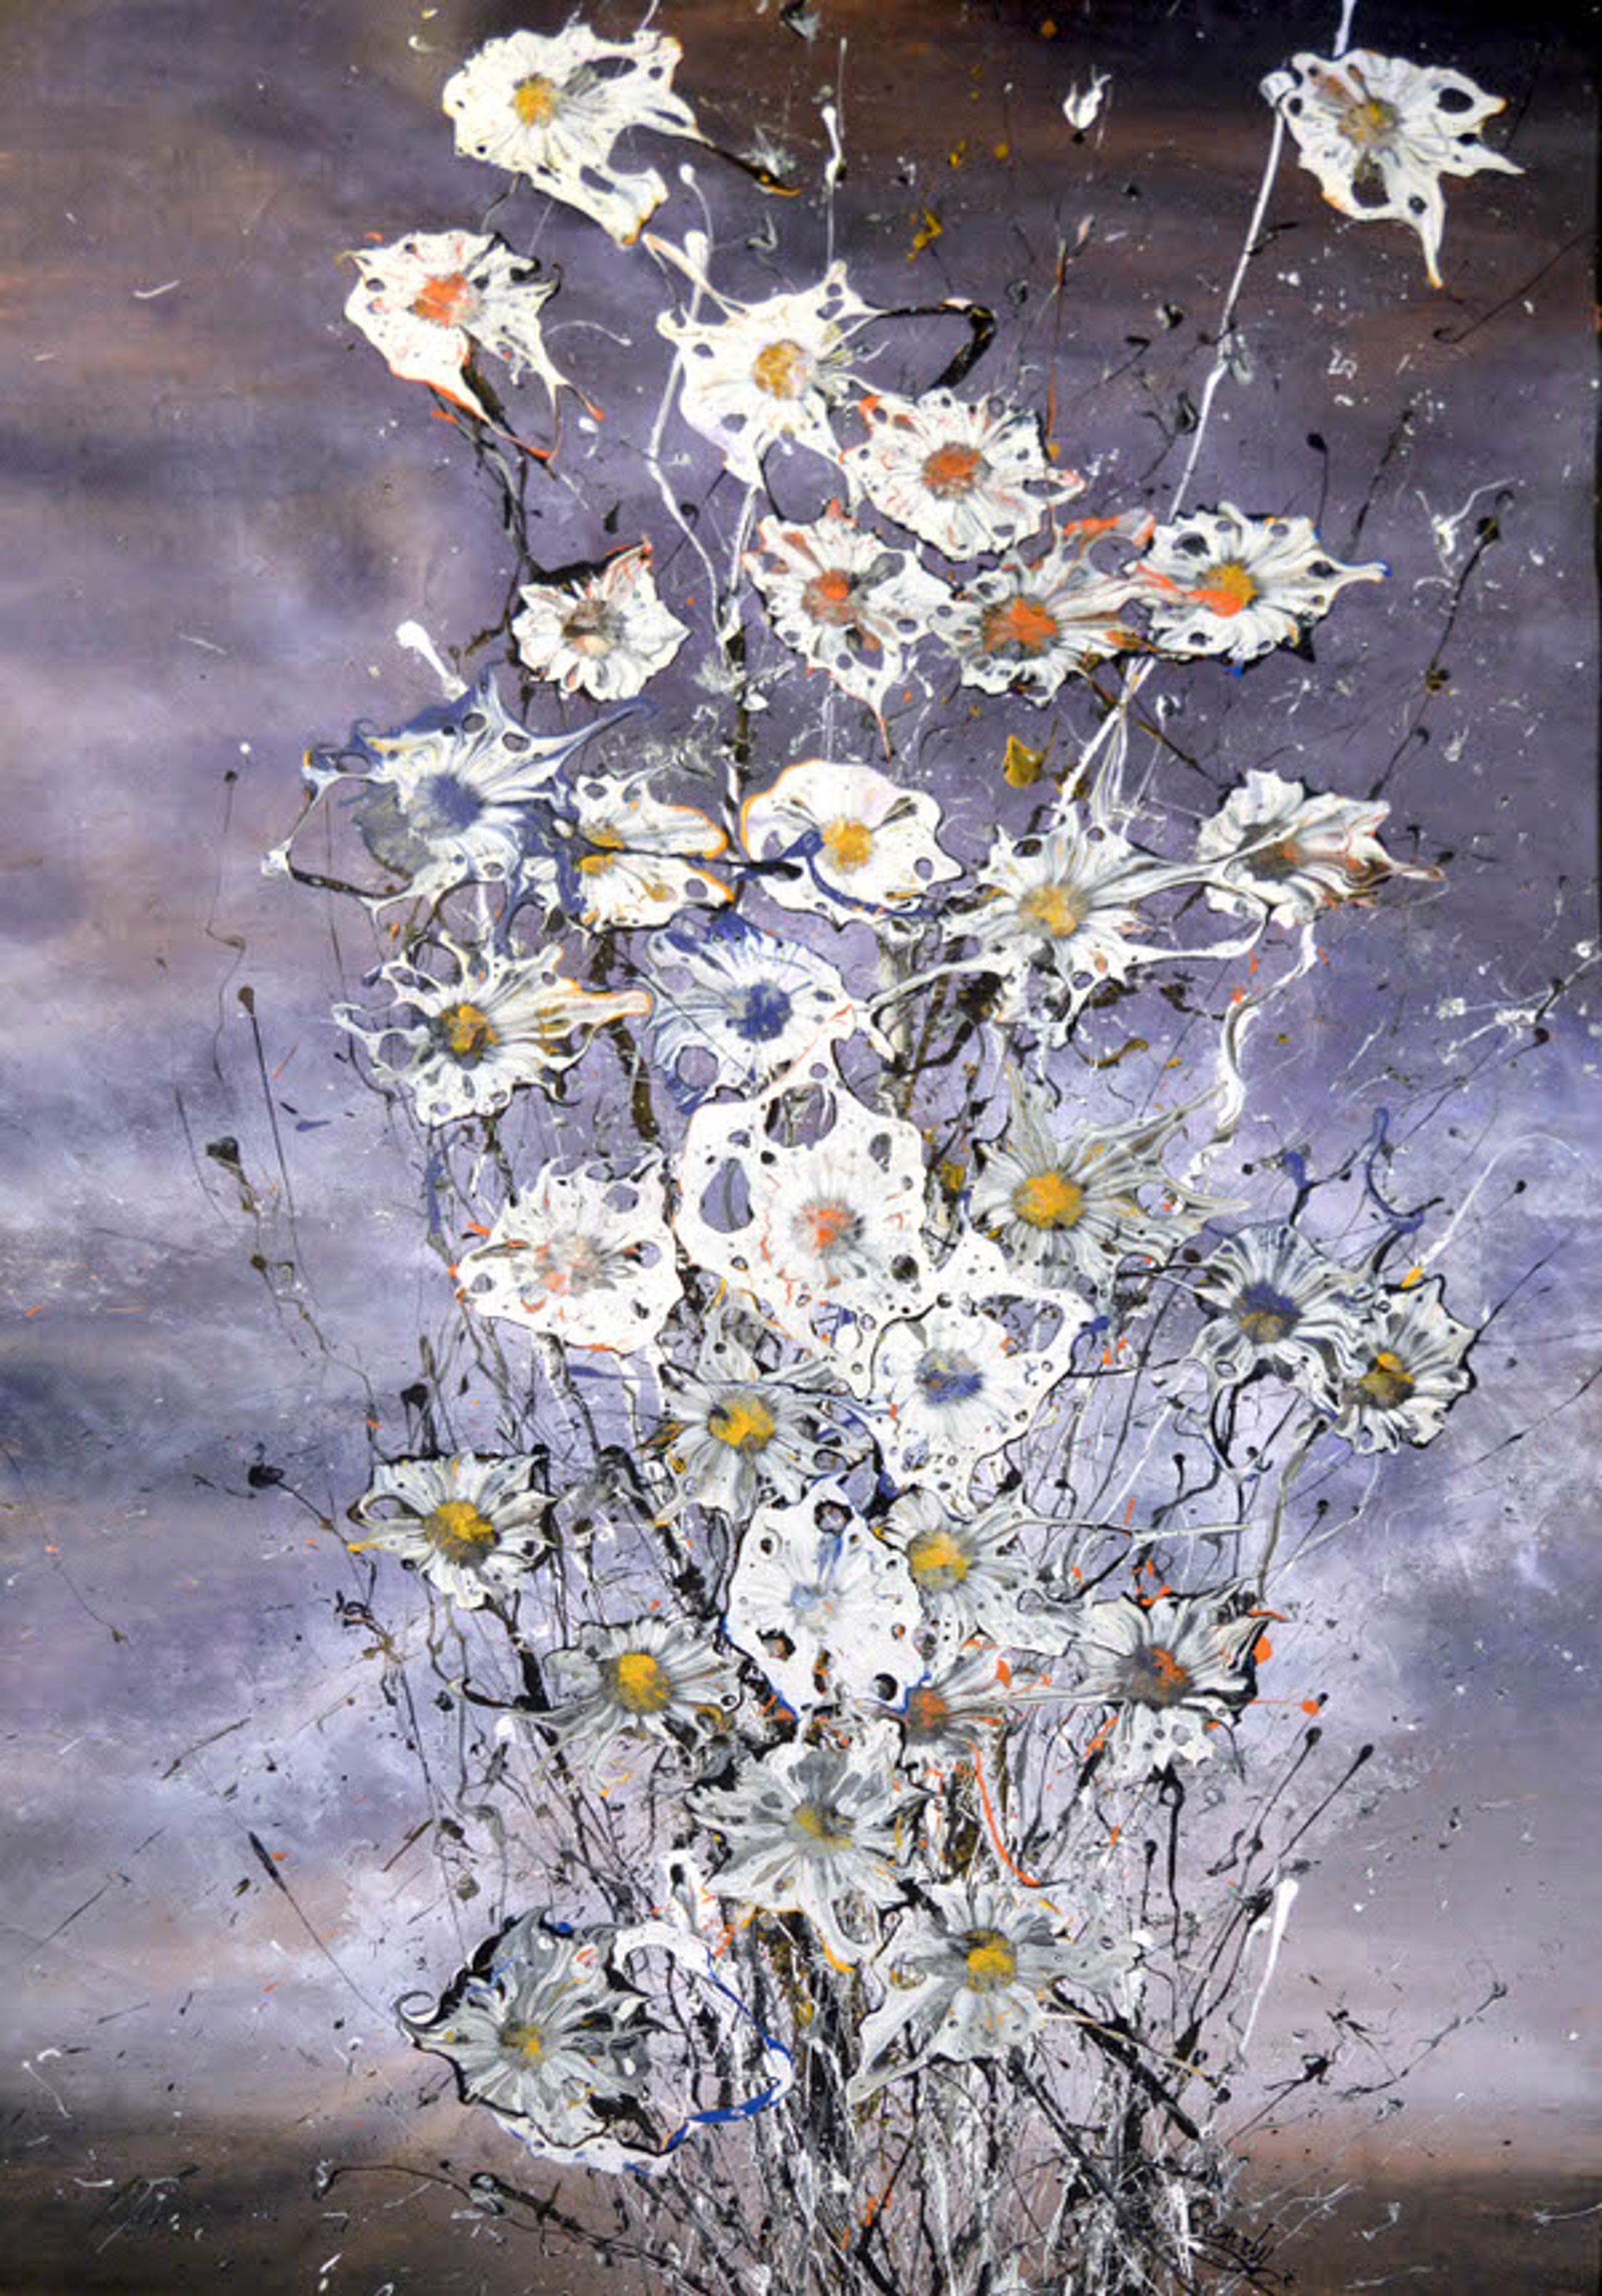 Wild Flowers by Rowdy Warren